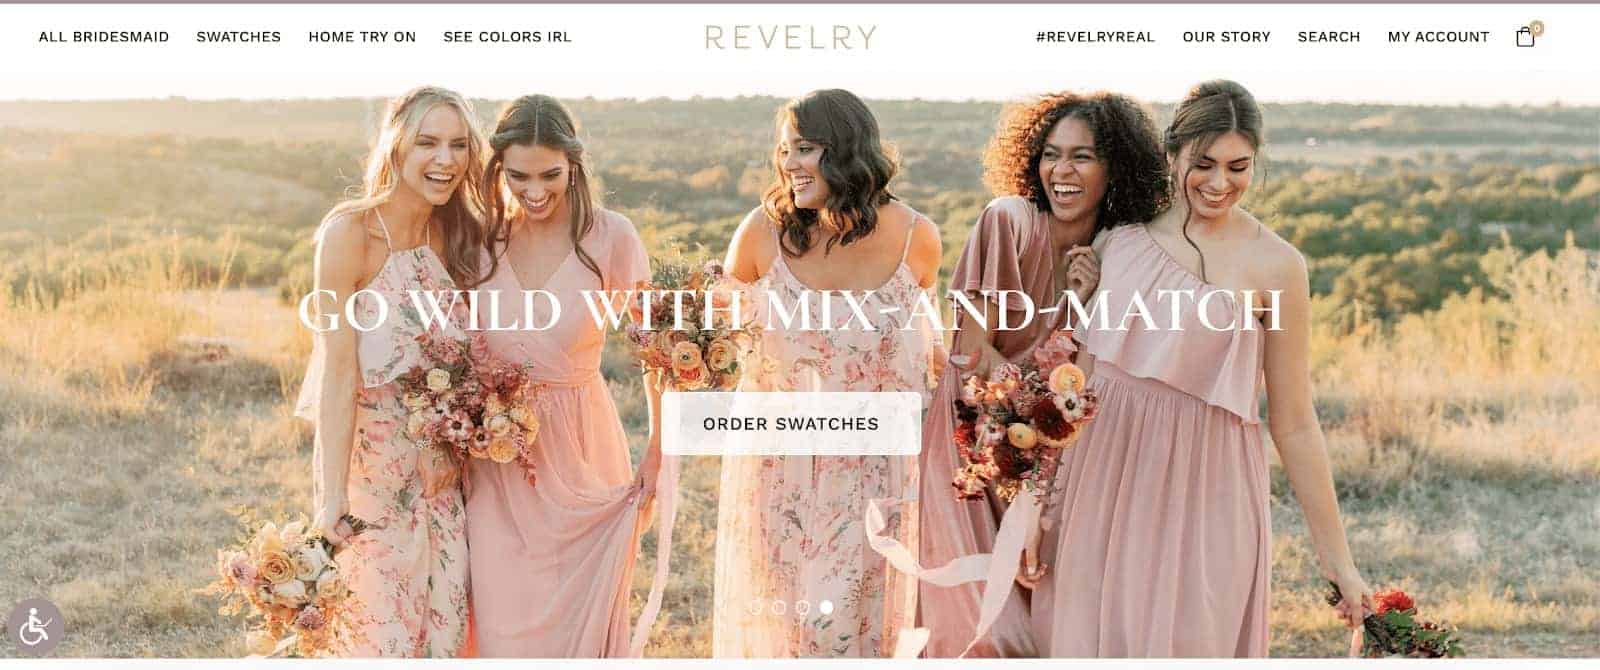 revelry website design